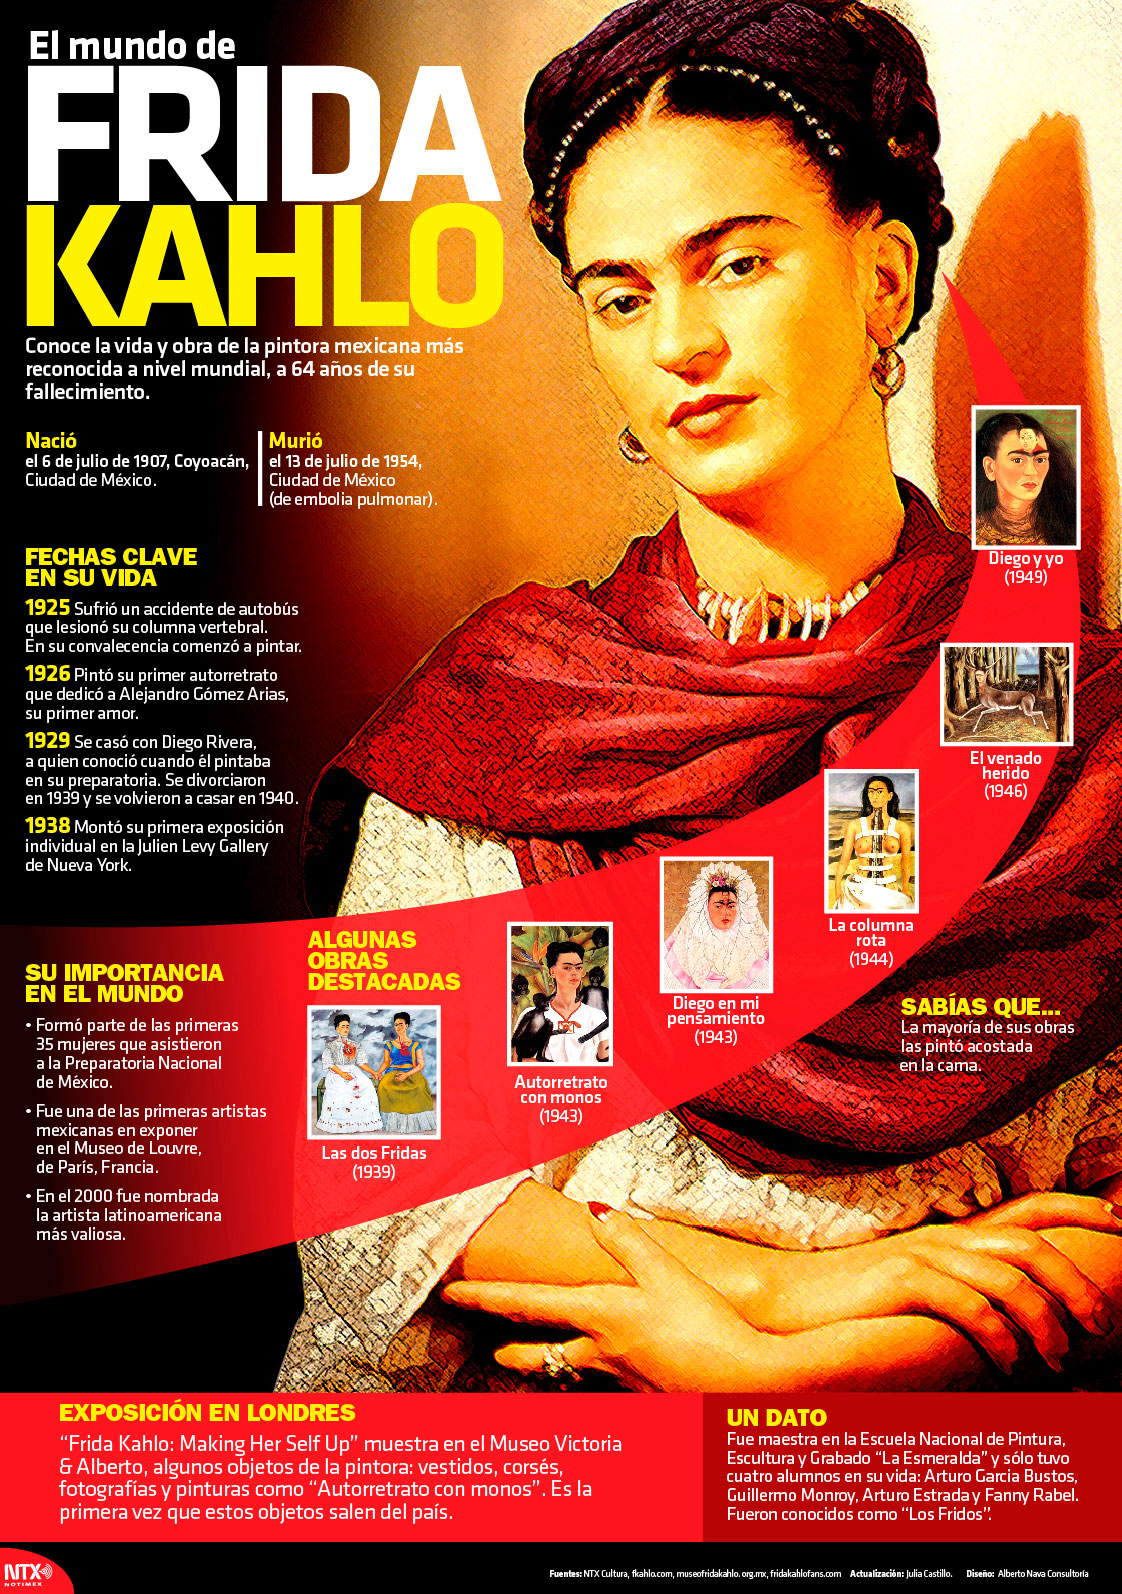 El mundo de Frida Kahlo